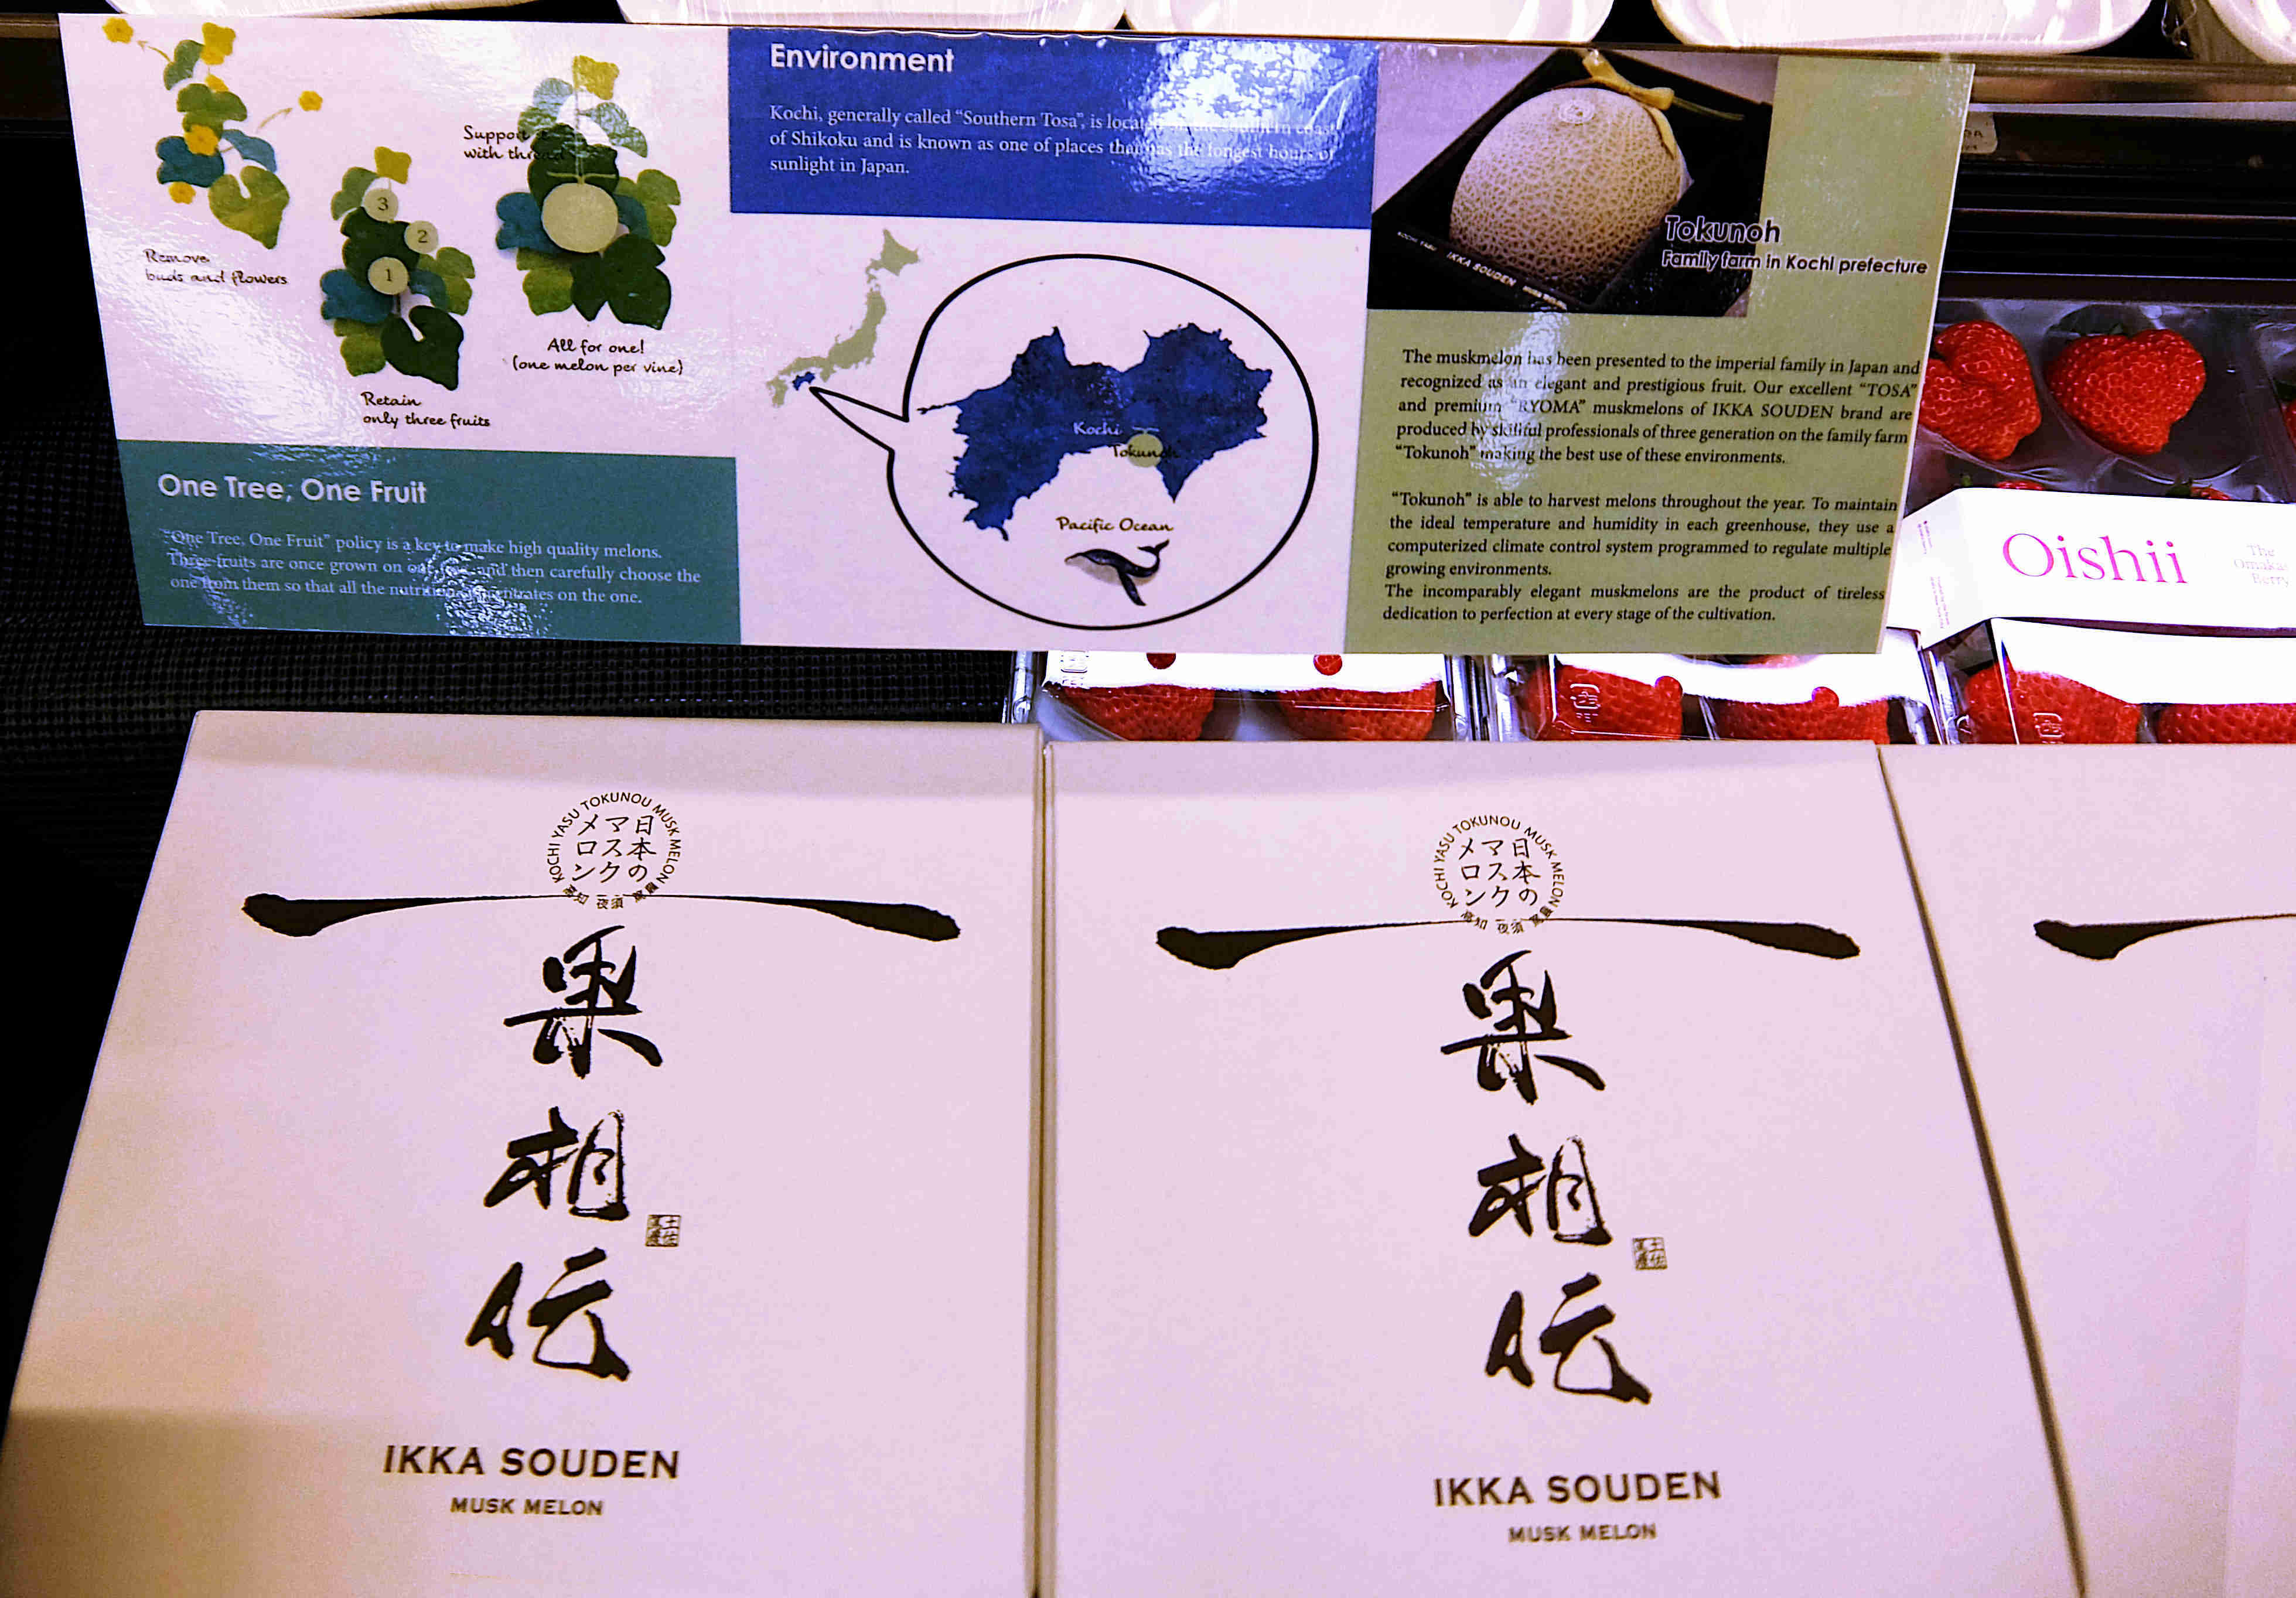 日本産の品々の認知度向上プロモーションに、日本食スーパー『Mitsuwa』（みつわ）は最適_b0007805_04542401.jpg